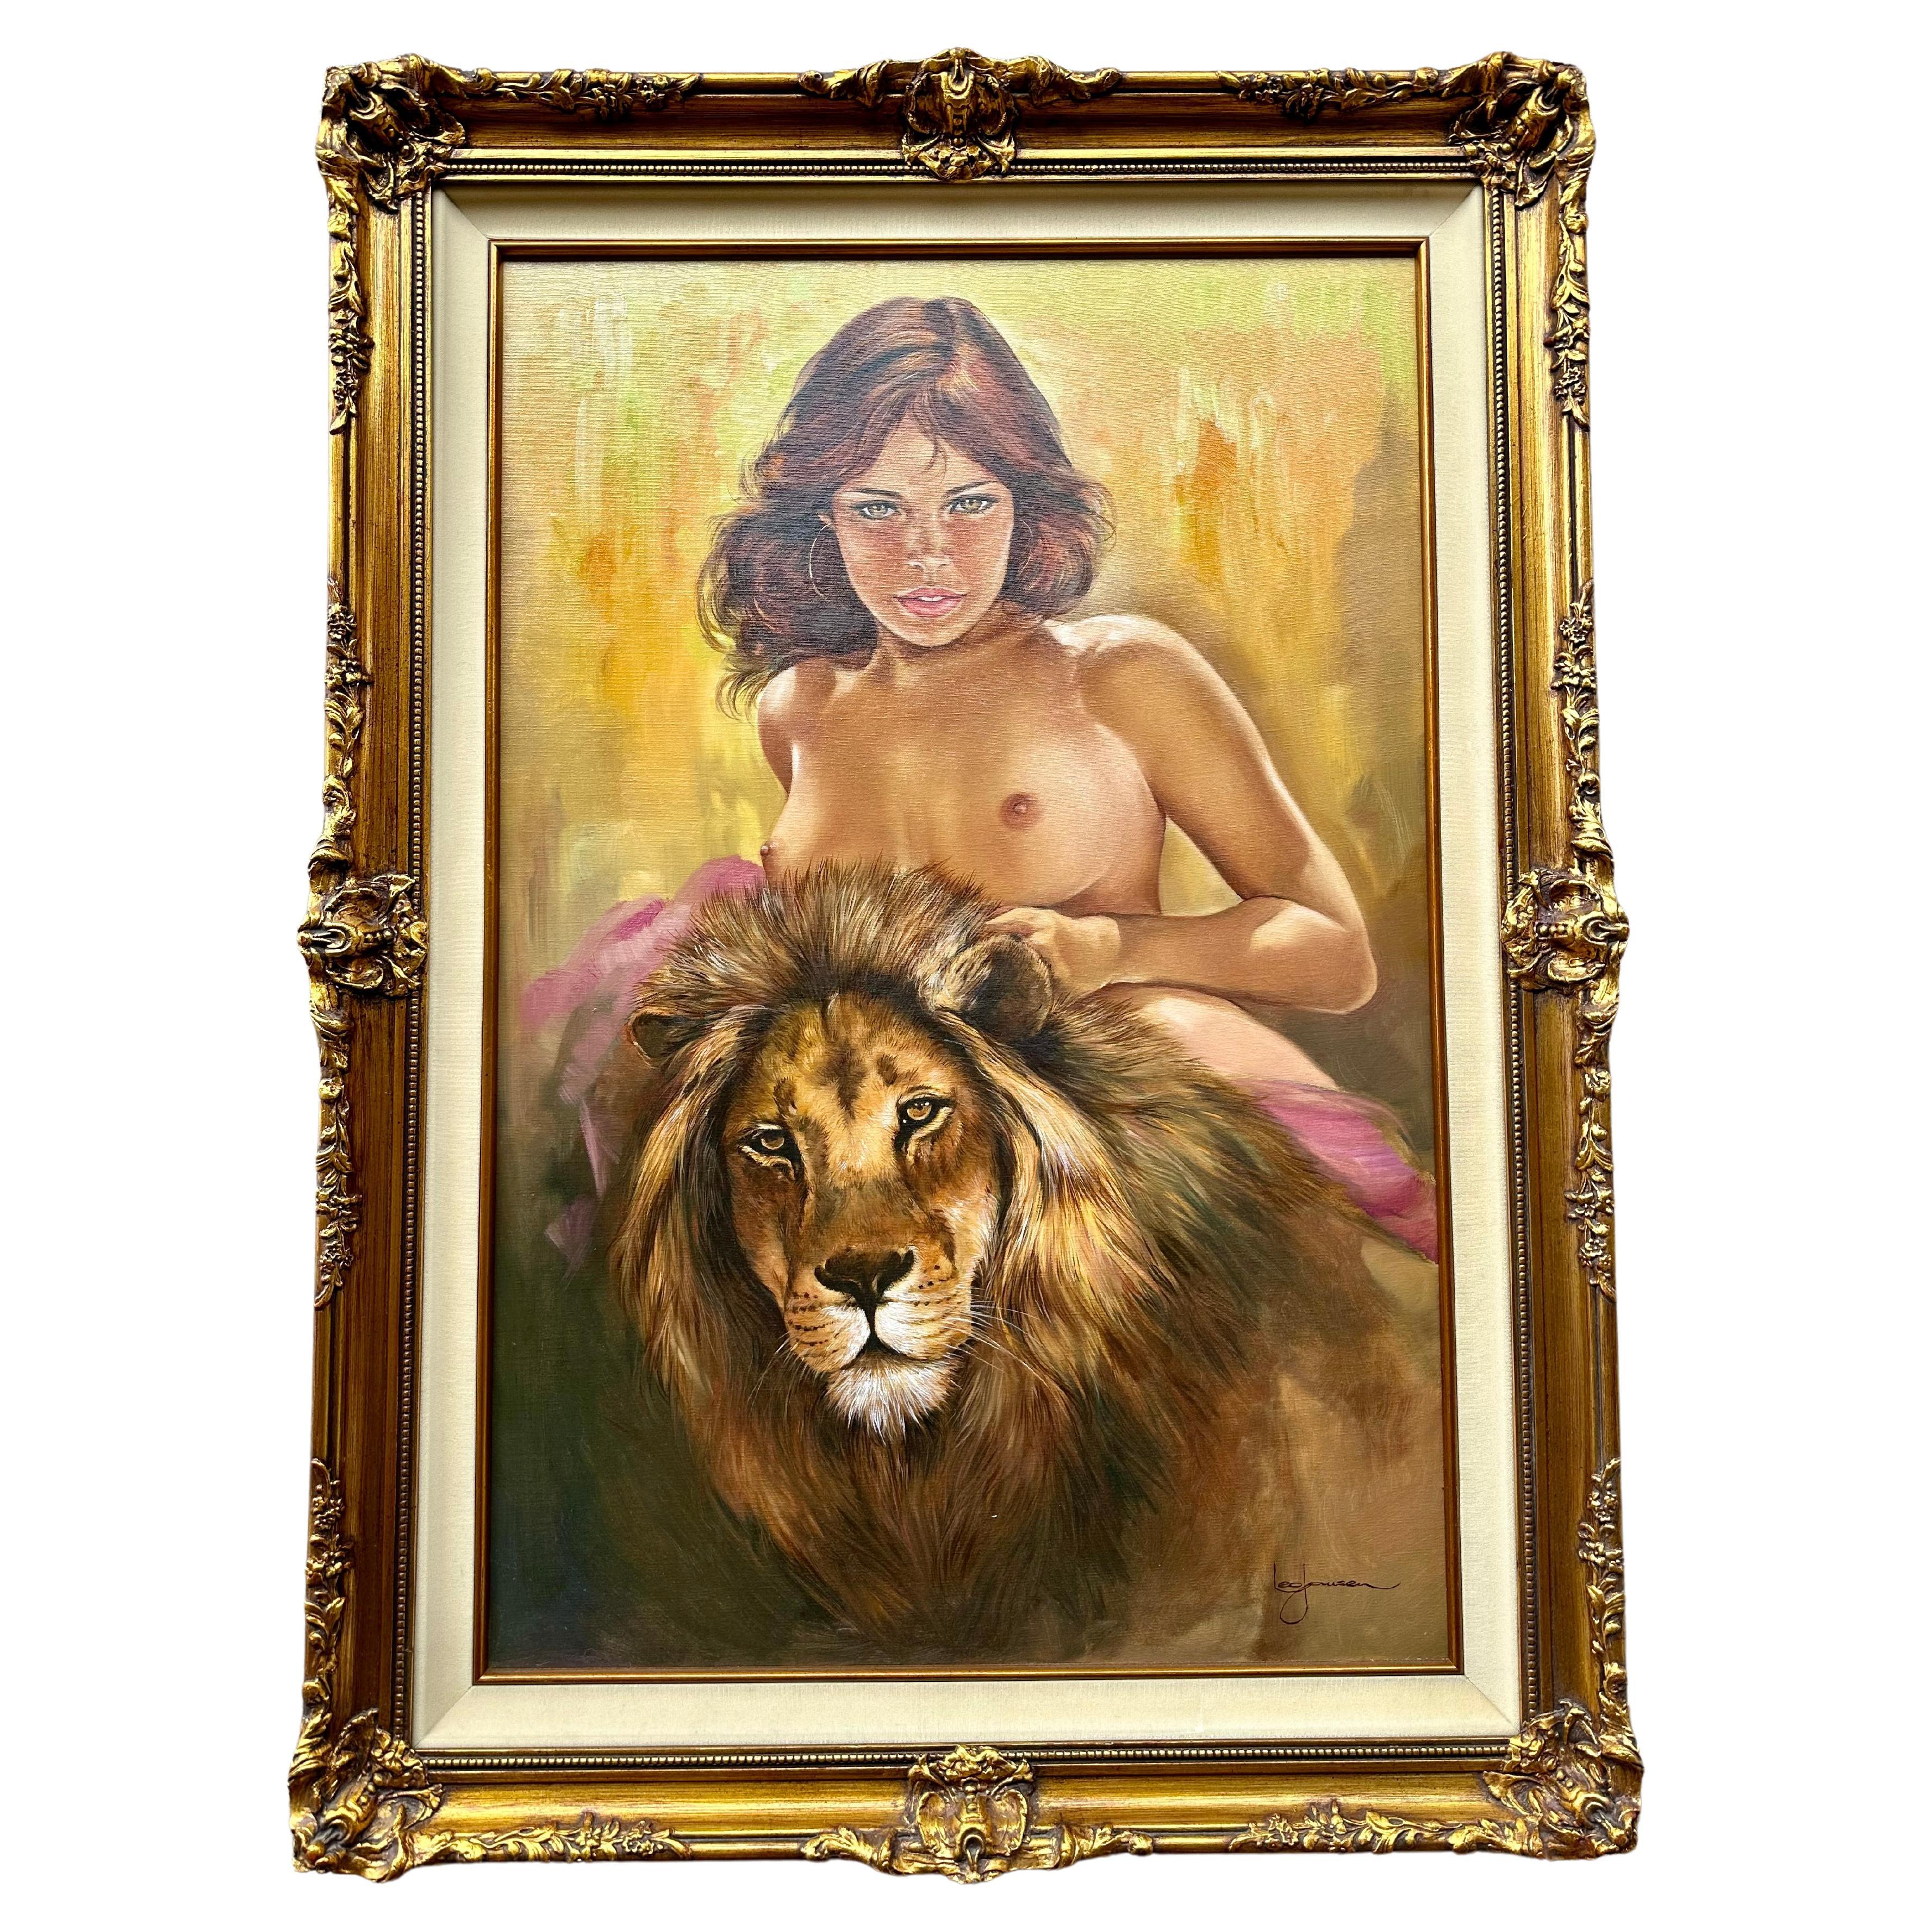 Très captivante huile sur toile originale d'une belle femme nue aux yeux d'ambre expressifs avec un lion à ses côtés, par le célèbre artiste néerlandais classé décédé, Leo Jansen (1930-1980).  Il s'agit d'une peinture très inhabituelle de Leo